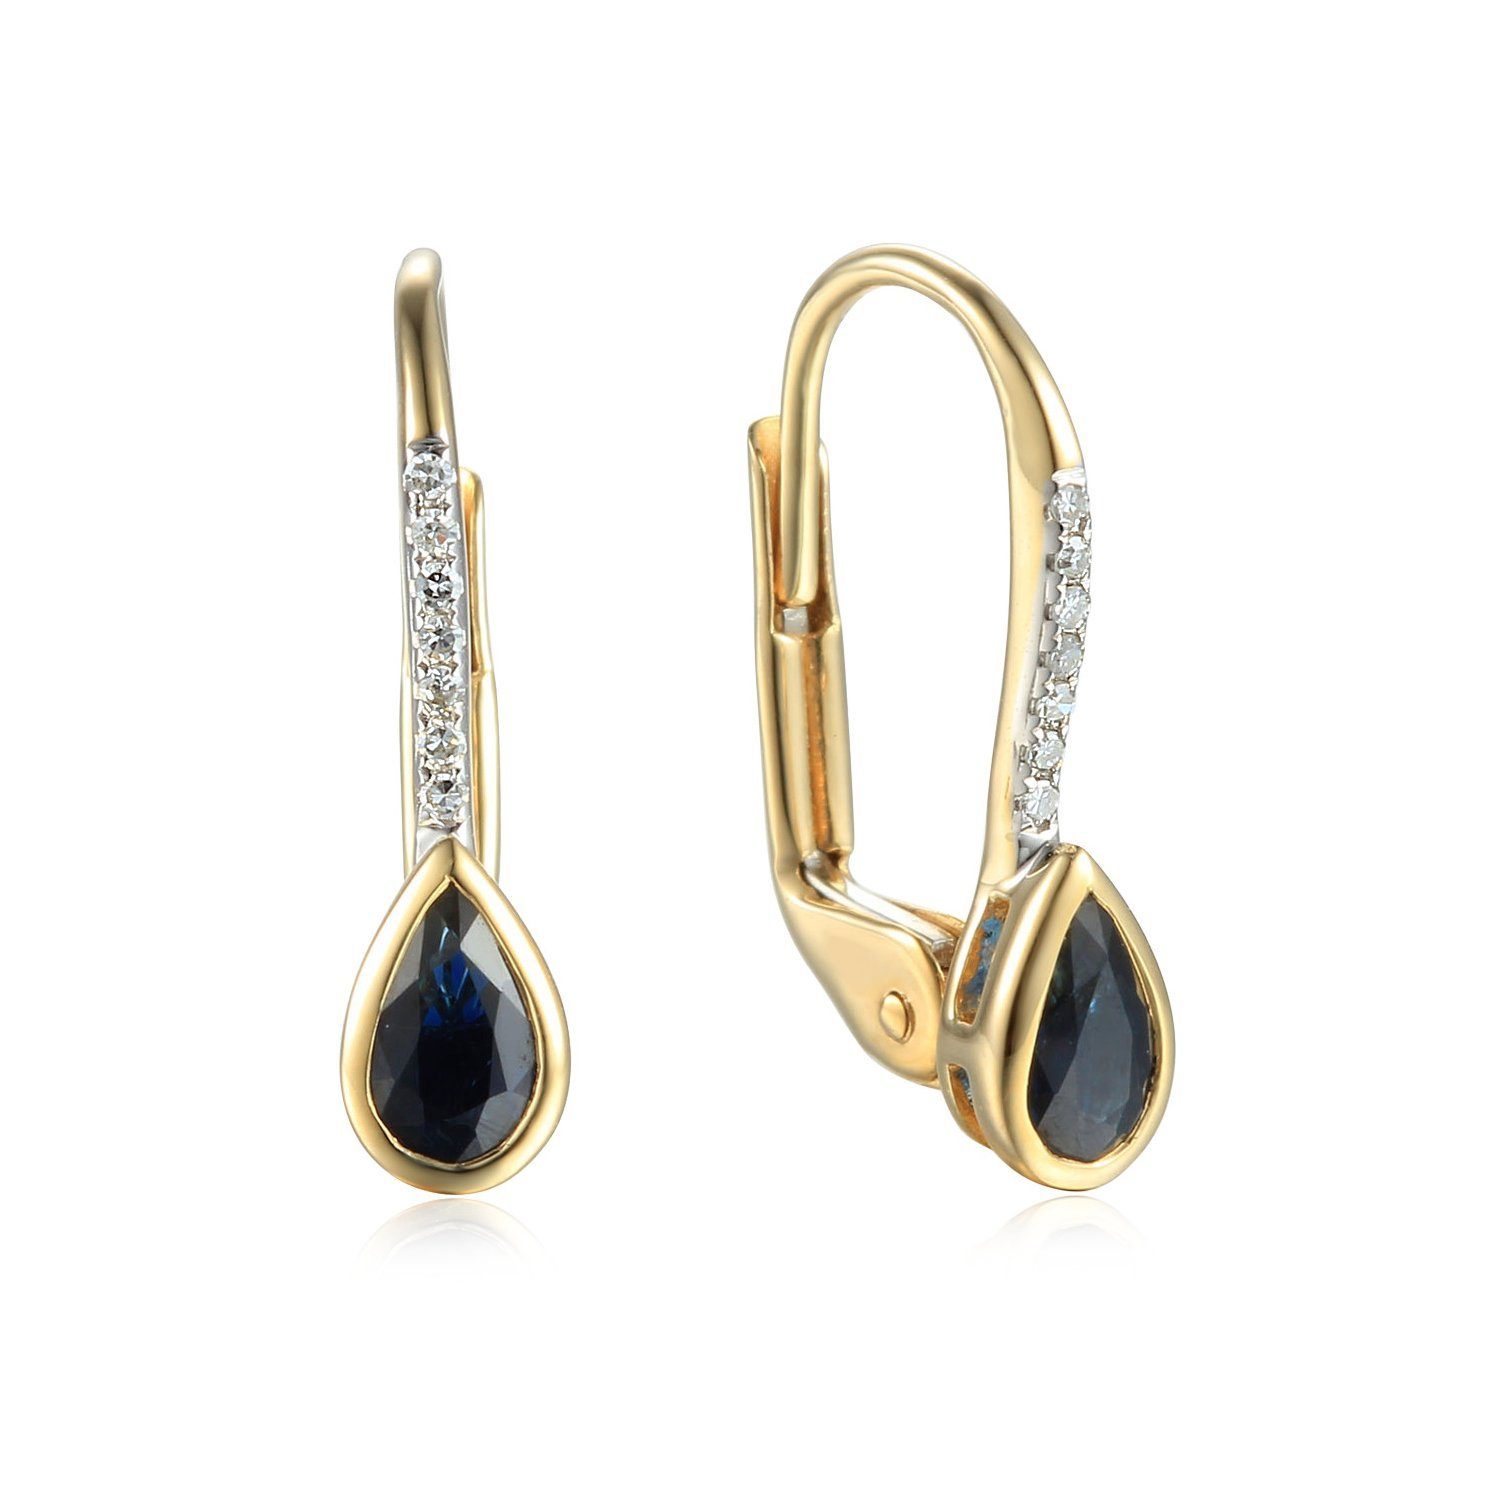 Stella-Jewellery Paar Ohrhänger 585er Gelbgold Ohrringe Saphir und  Diamanten (inkl. Etui, Gold Ohrschmuck), Blautopas ca. 1,86 ct.